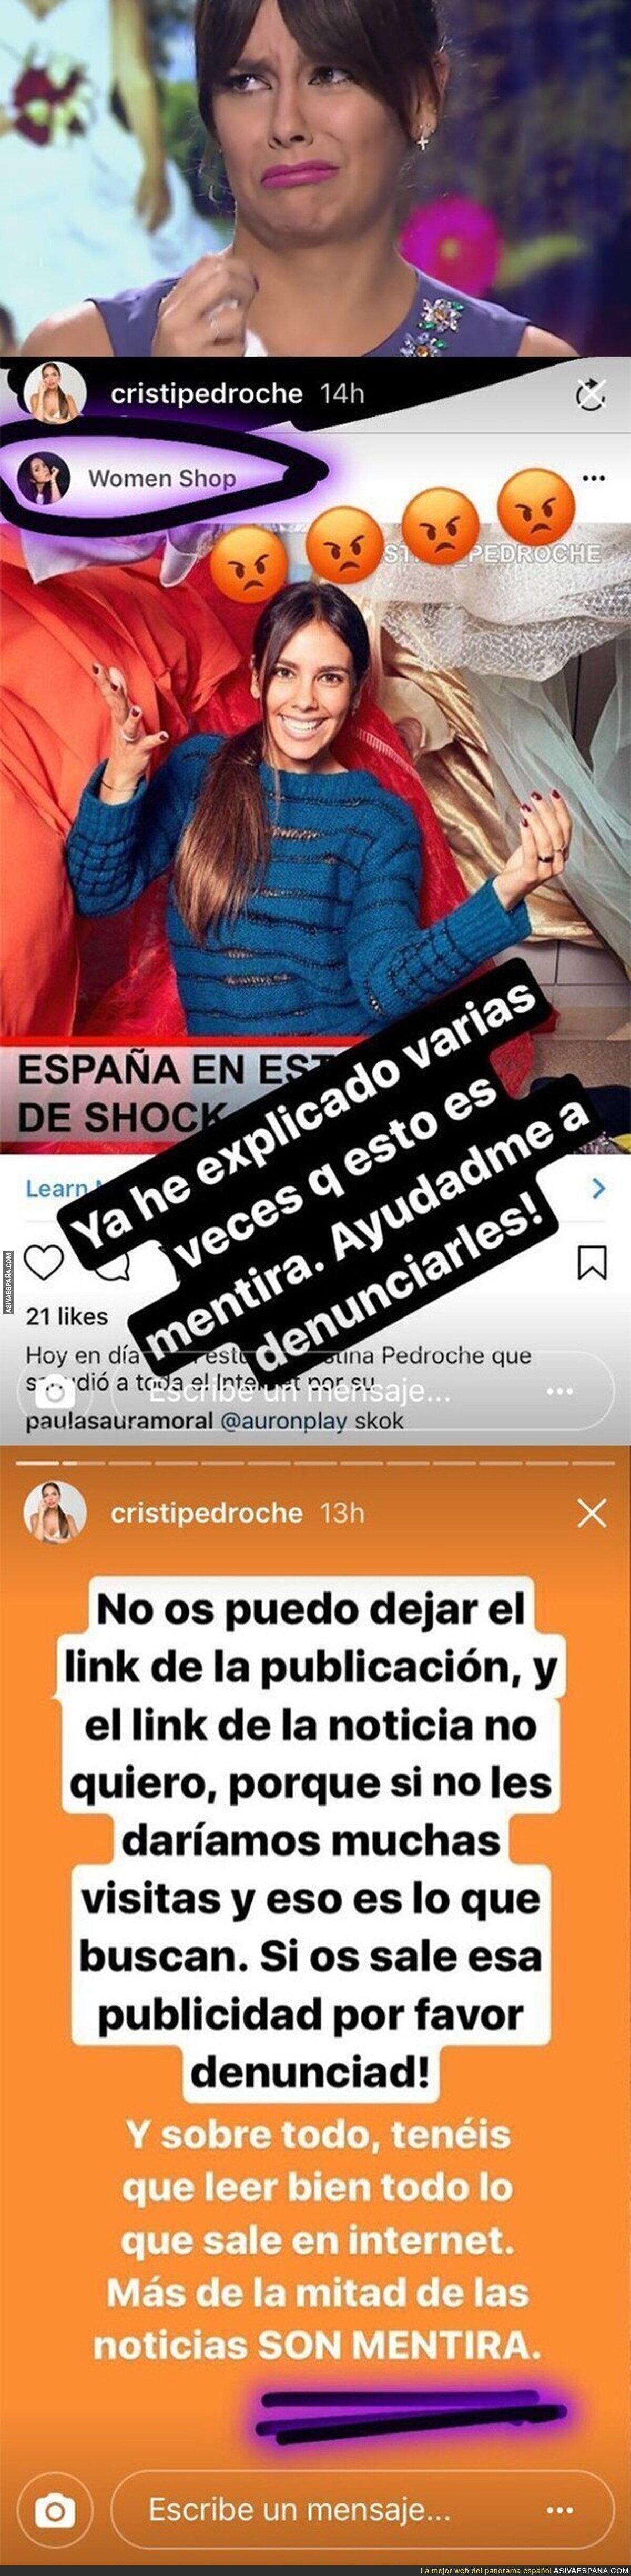 Cristina Pedroche pide ayuda en Instagram con estos mensajes porque usan su imagen sin consentimient